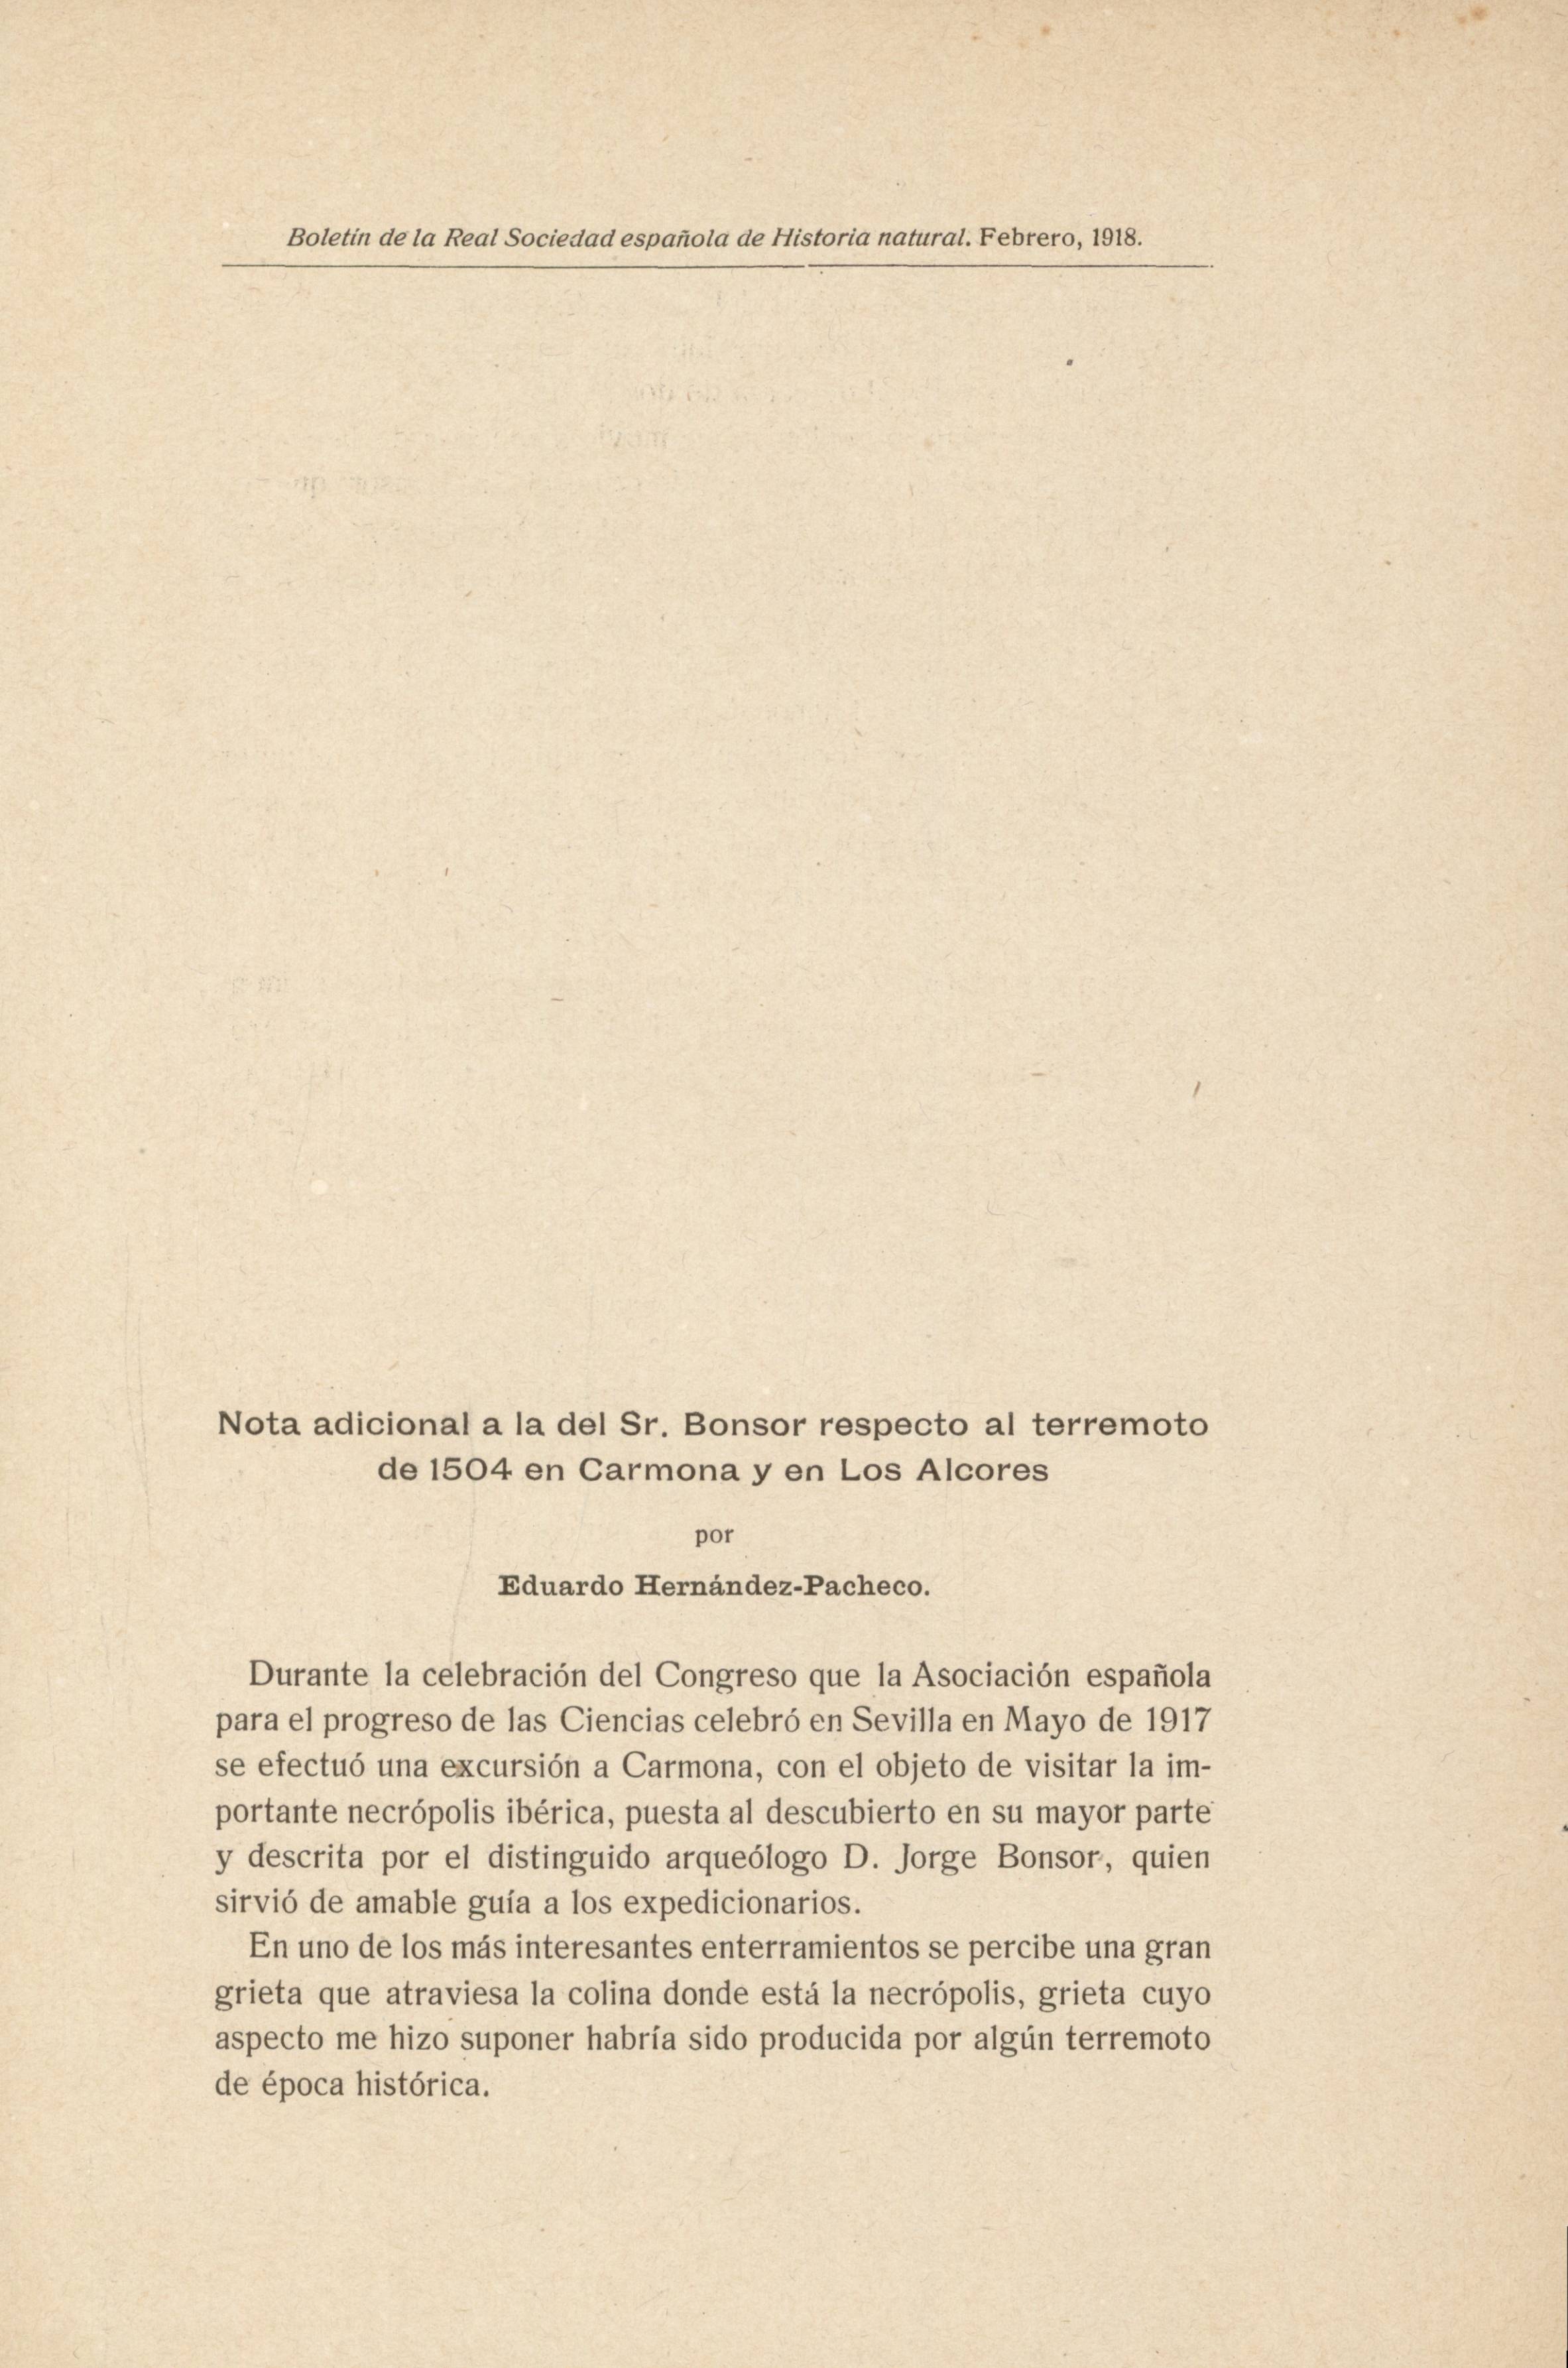 Nota adicional a la del Sr. bonsor respecto al terremoto de 1504 en Carmona y en los Alcores, por Eduardo Hernández-Pacheco